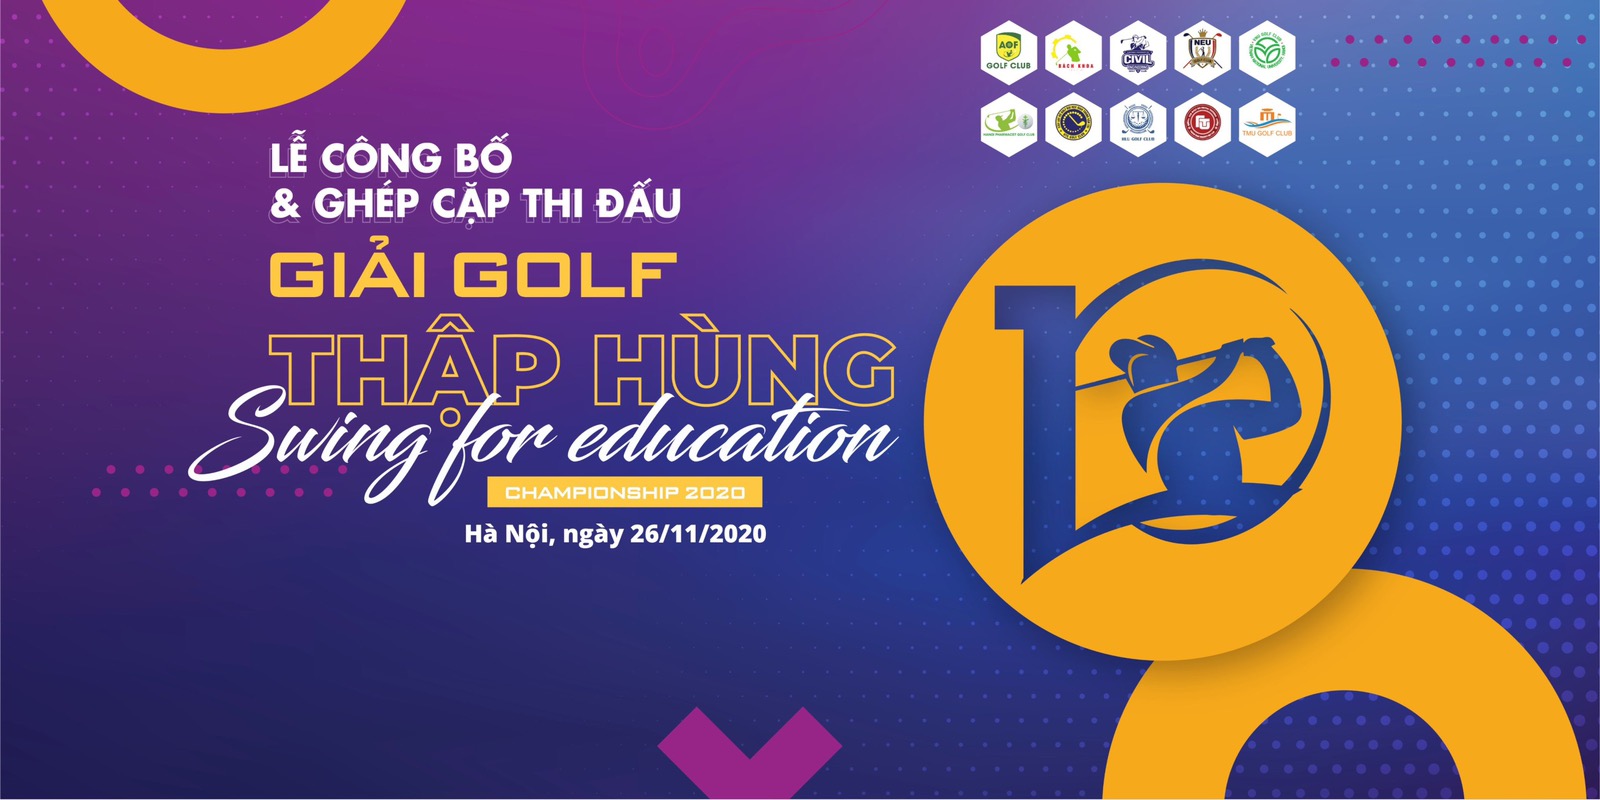 "Giải golf Thập Hùng 2020 - Swing for Education" chuẩn bị khởi tranh